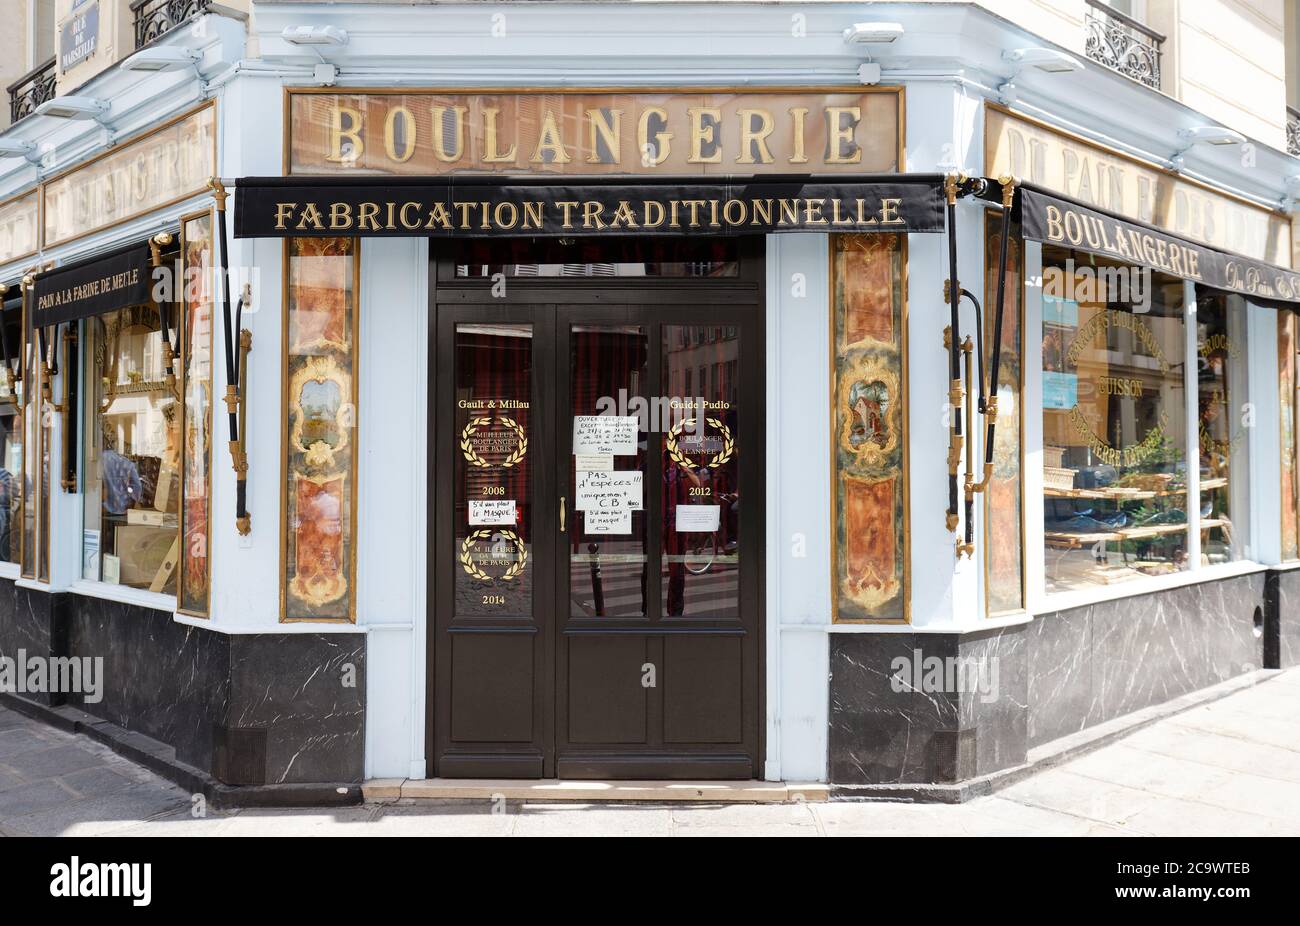 La boulangerie du pain et des idees est proche du canal dans le 10ème arrondissement, non loin de la place de la République , au coin de la rue de Marseille Banque D'Images